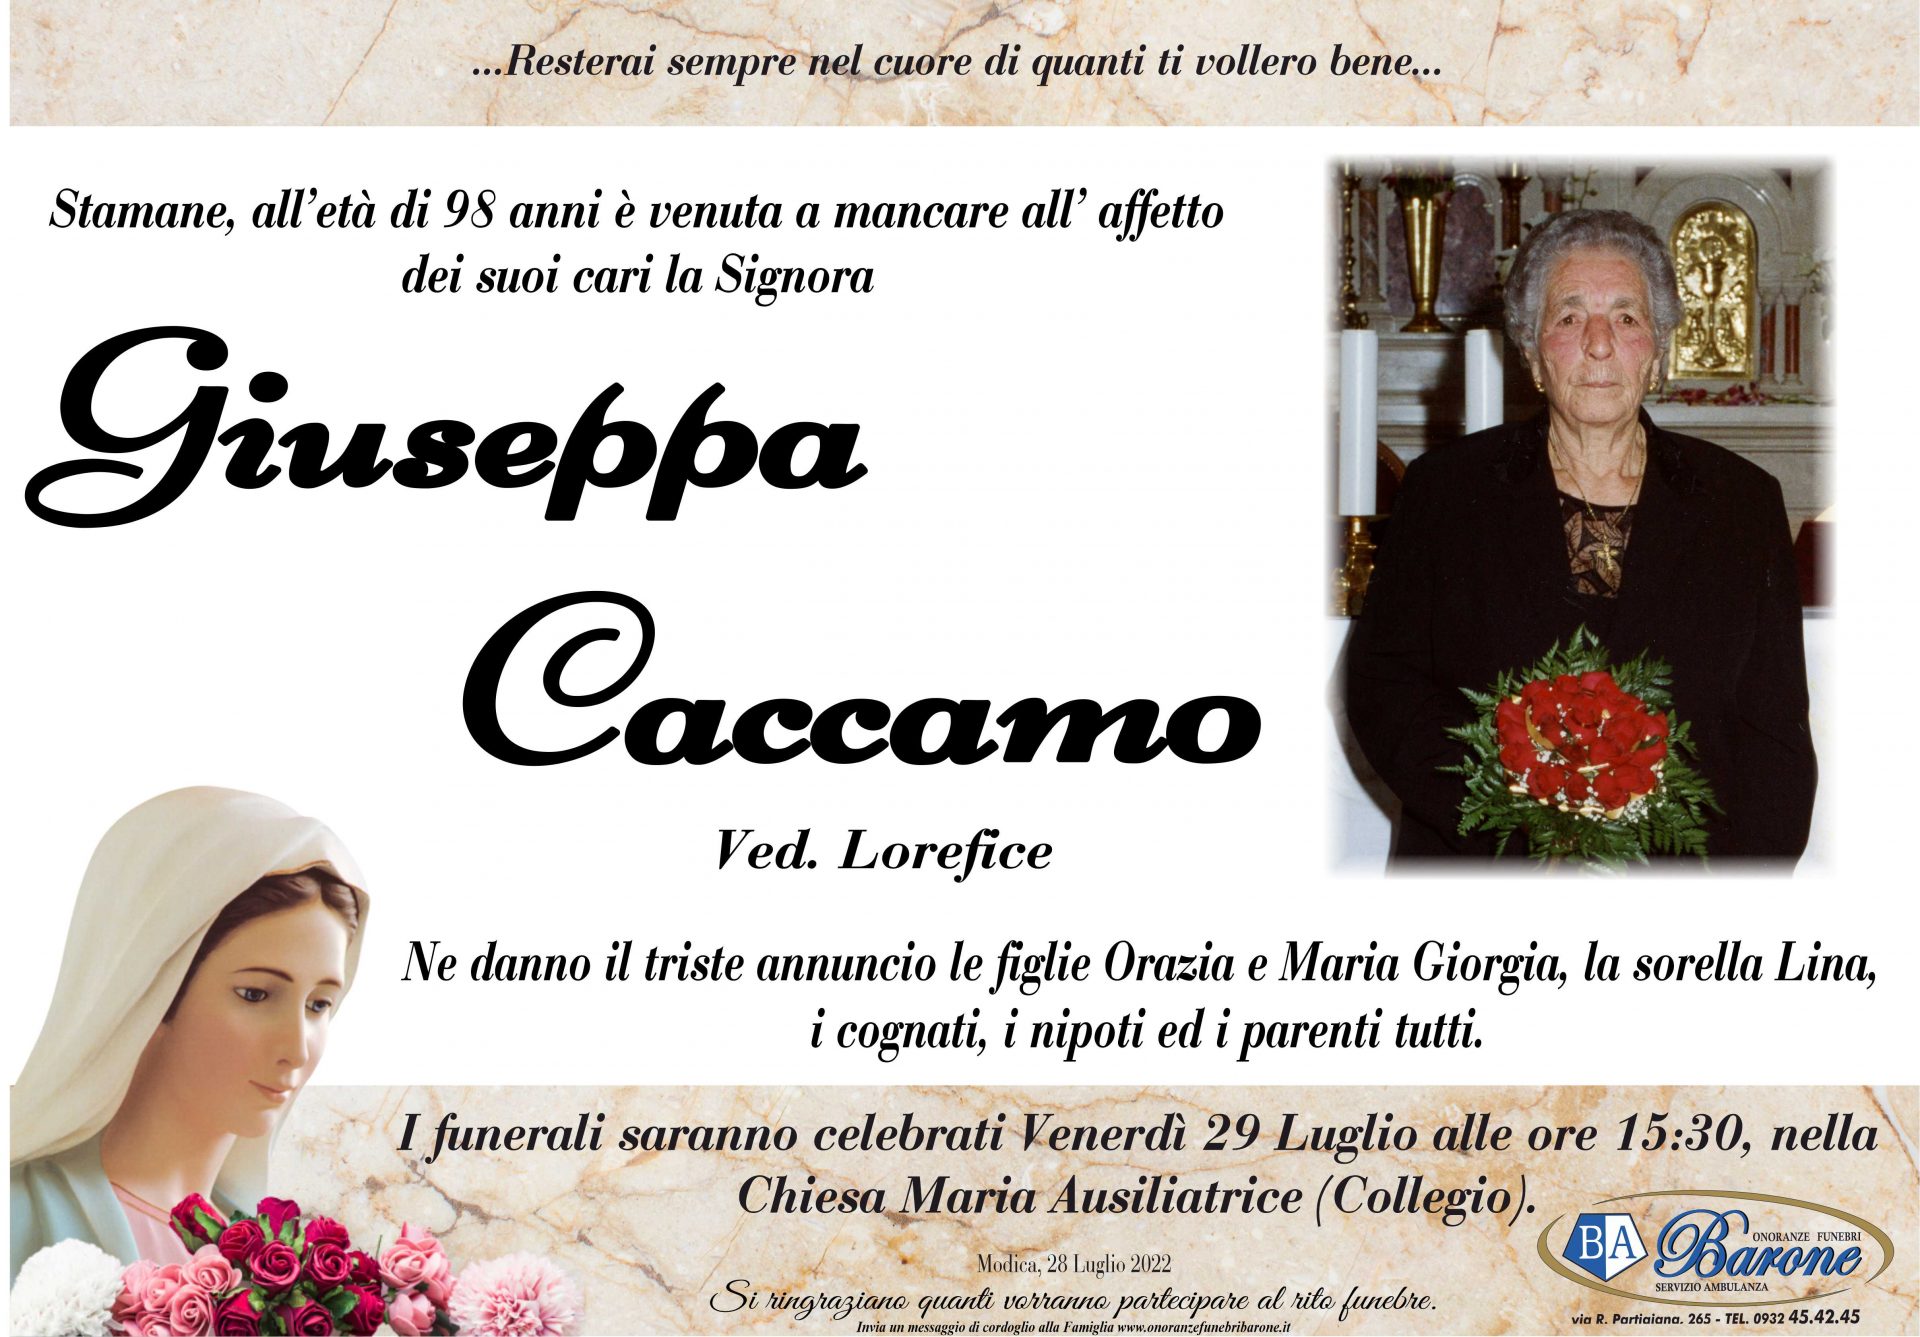 Giuseppa Caccamo